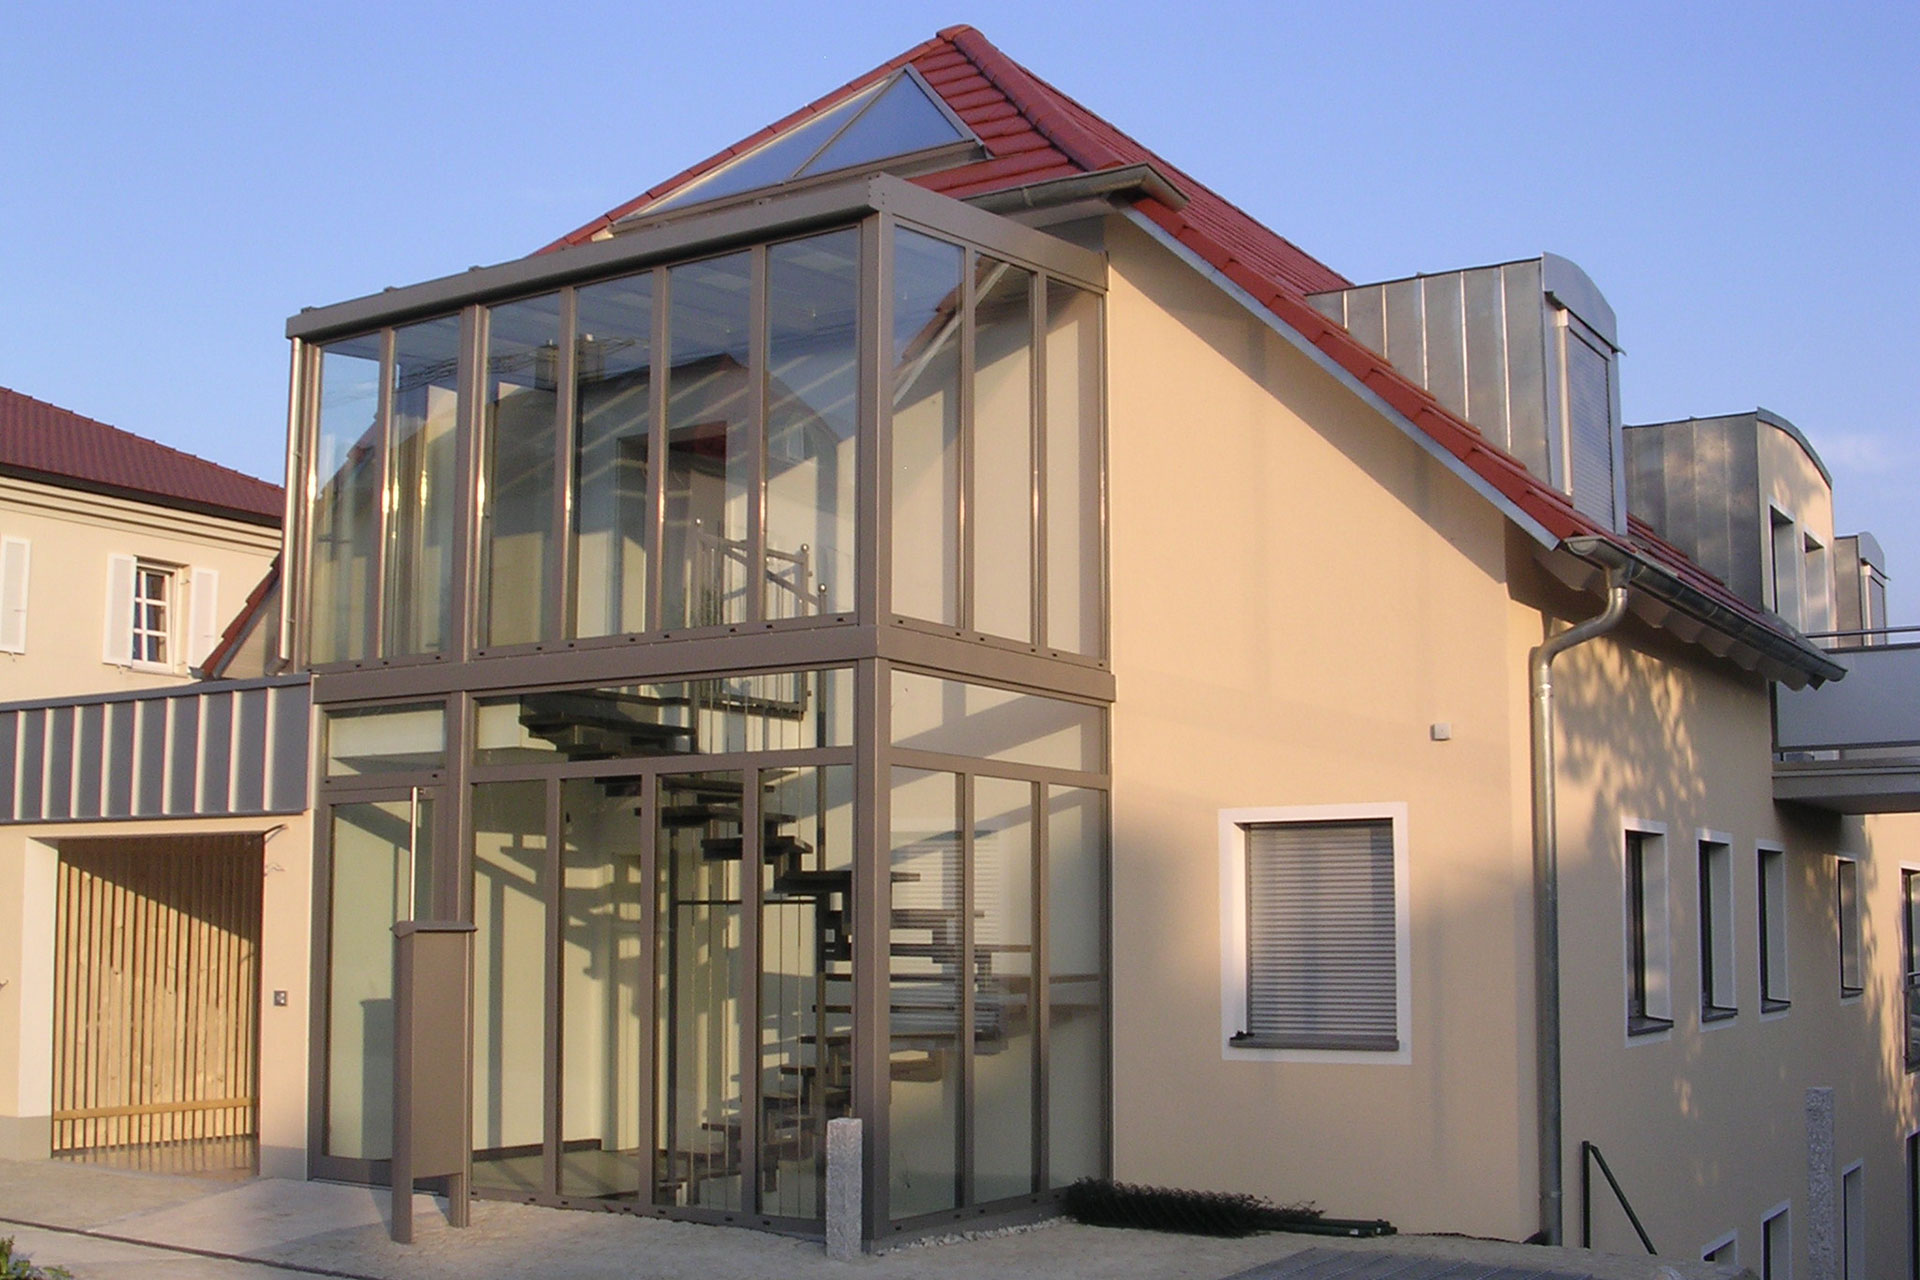 Glasvorbau in Pfosten-Riegel-Bauweise